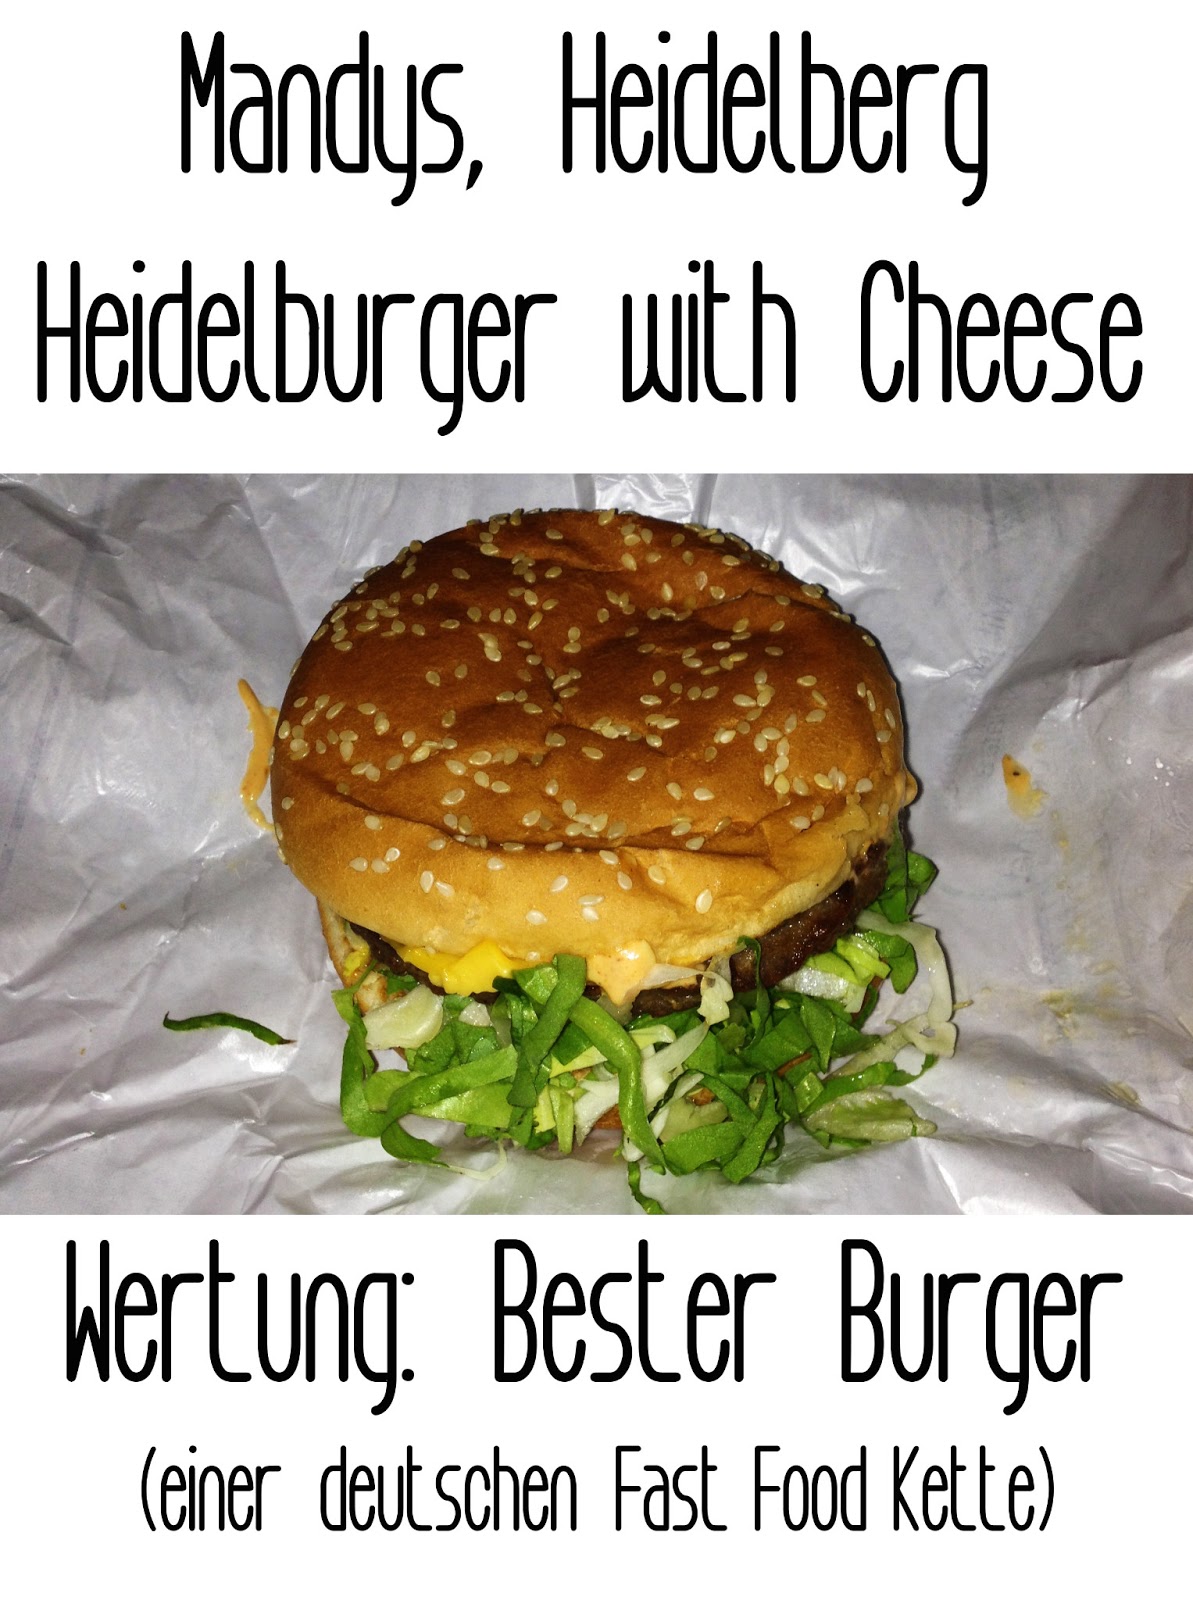 http://germanysbestburger.blogspot.de/2013/06/mandys-heidelberg.html